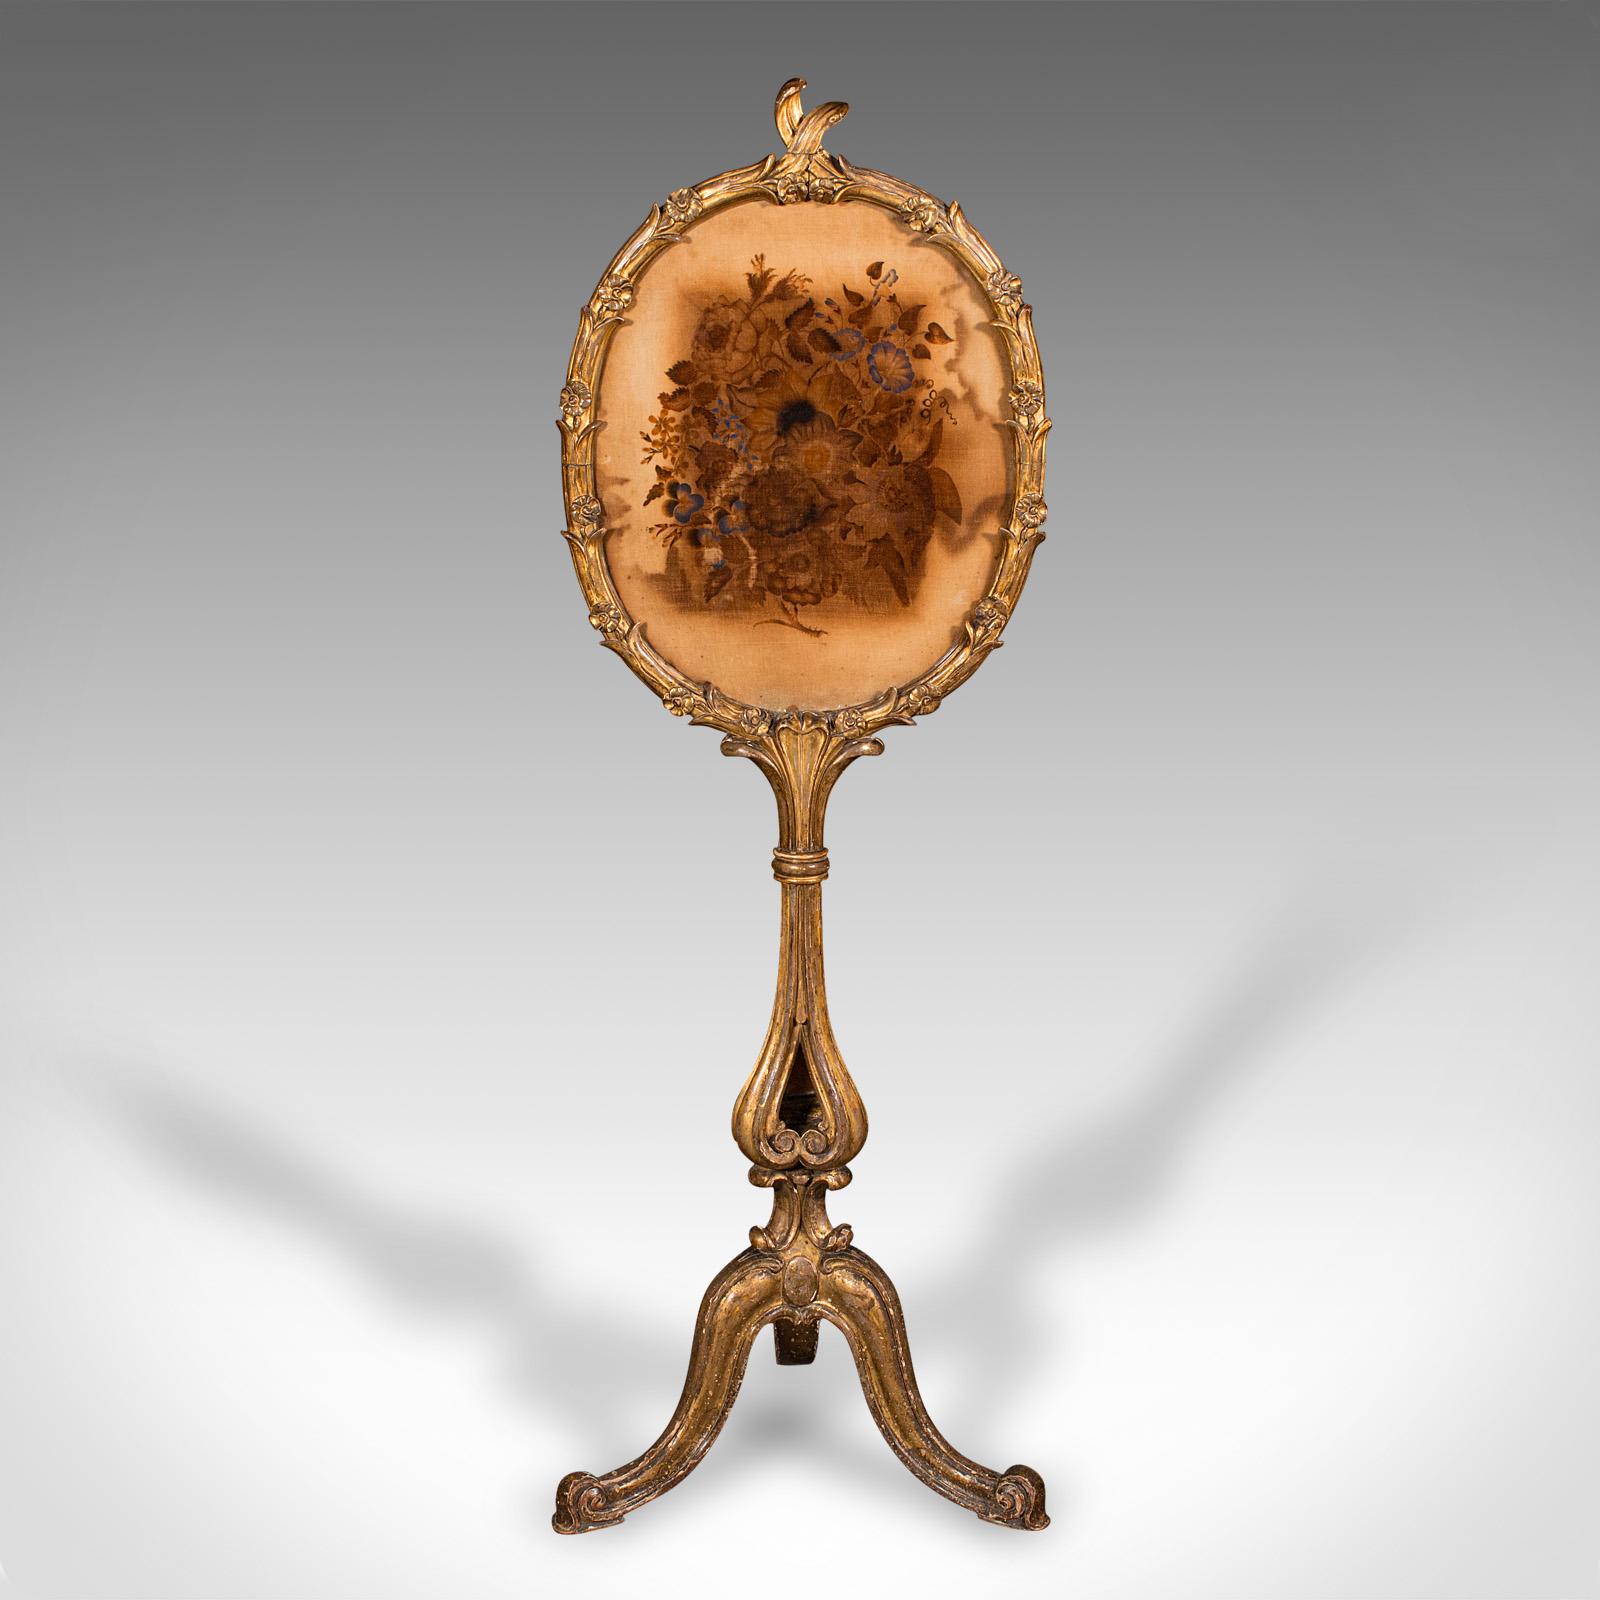 
Dies ist ein antiker Stangenschirm. Ein englischer Kaminreflektor aus Vergoldung und Glas aus der Regency-Periode, um 1820.

Feine Regency-Handwerkskunst mit niederländischem Einfluss auf das Dekor
Zeigt eine wünschenswerte Alterspatina und in